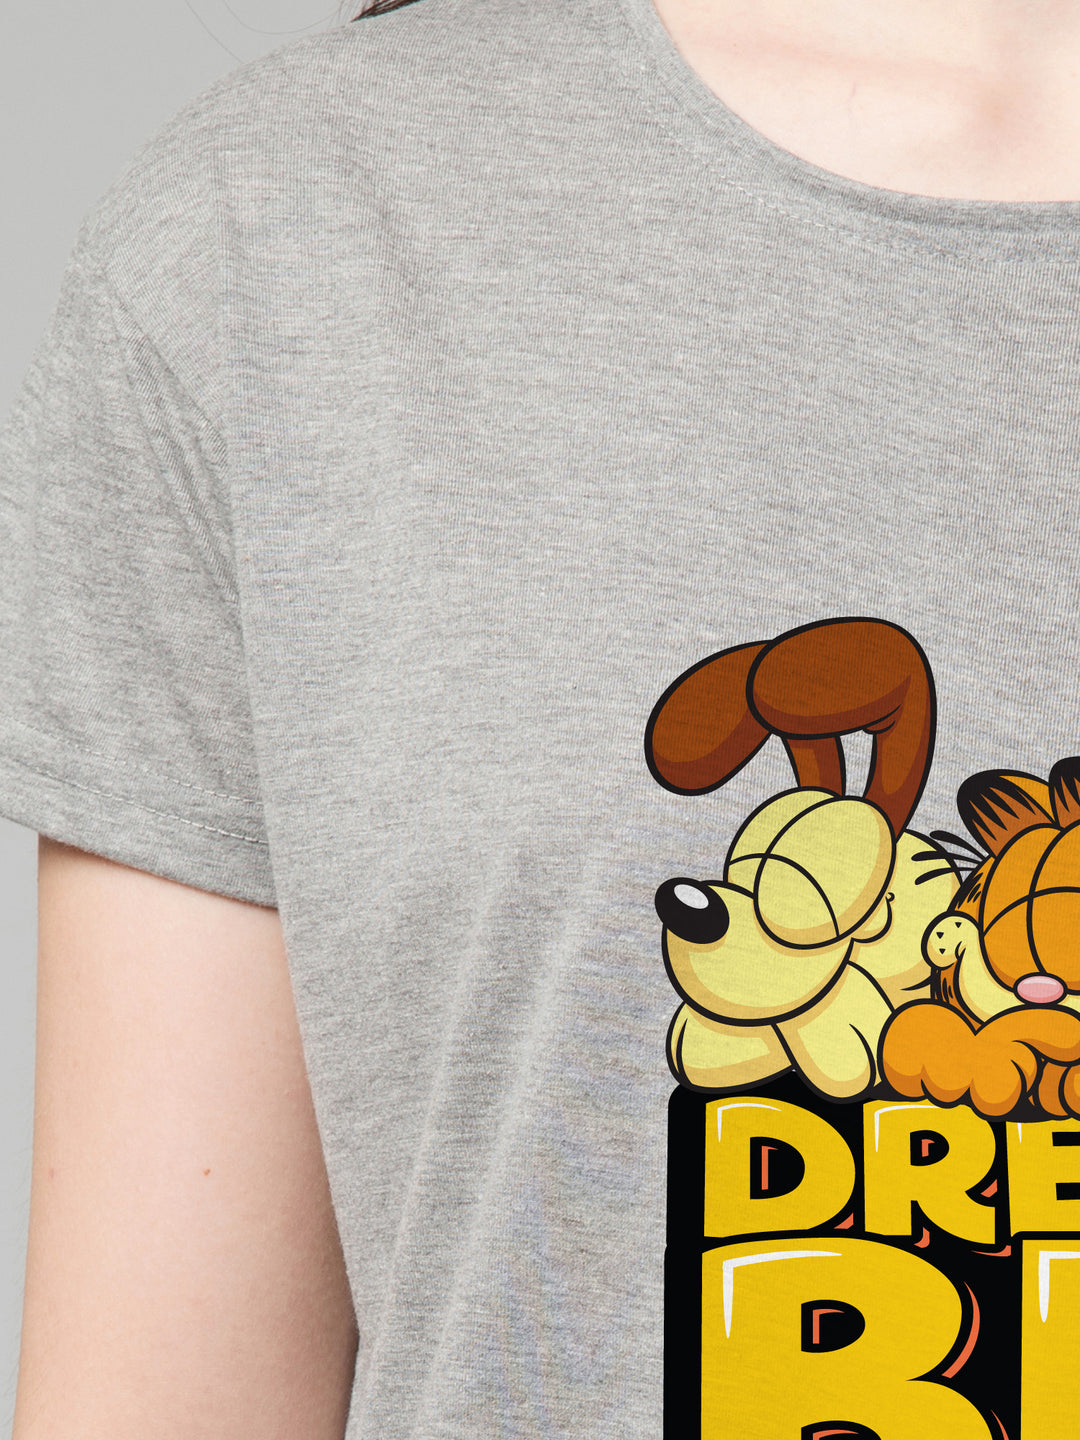 Dream Big  - FFLIRTYGO x Garfield